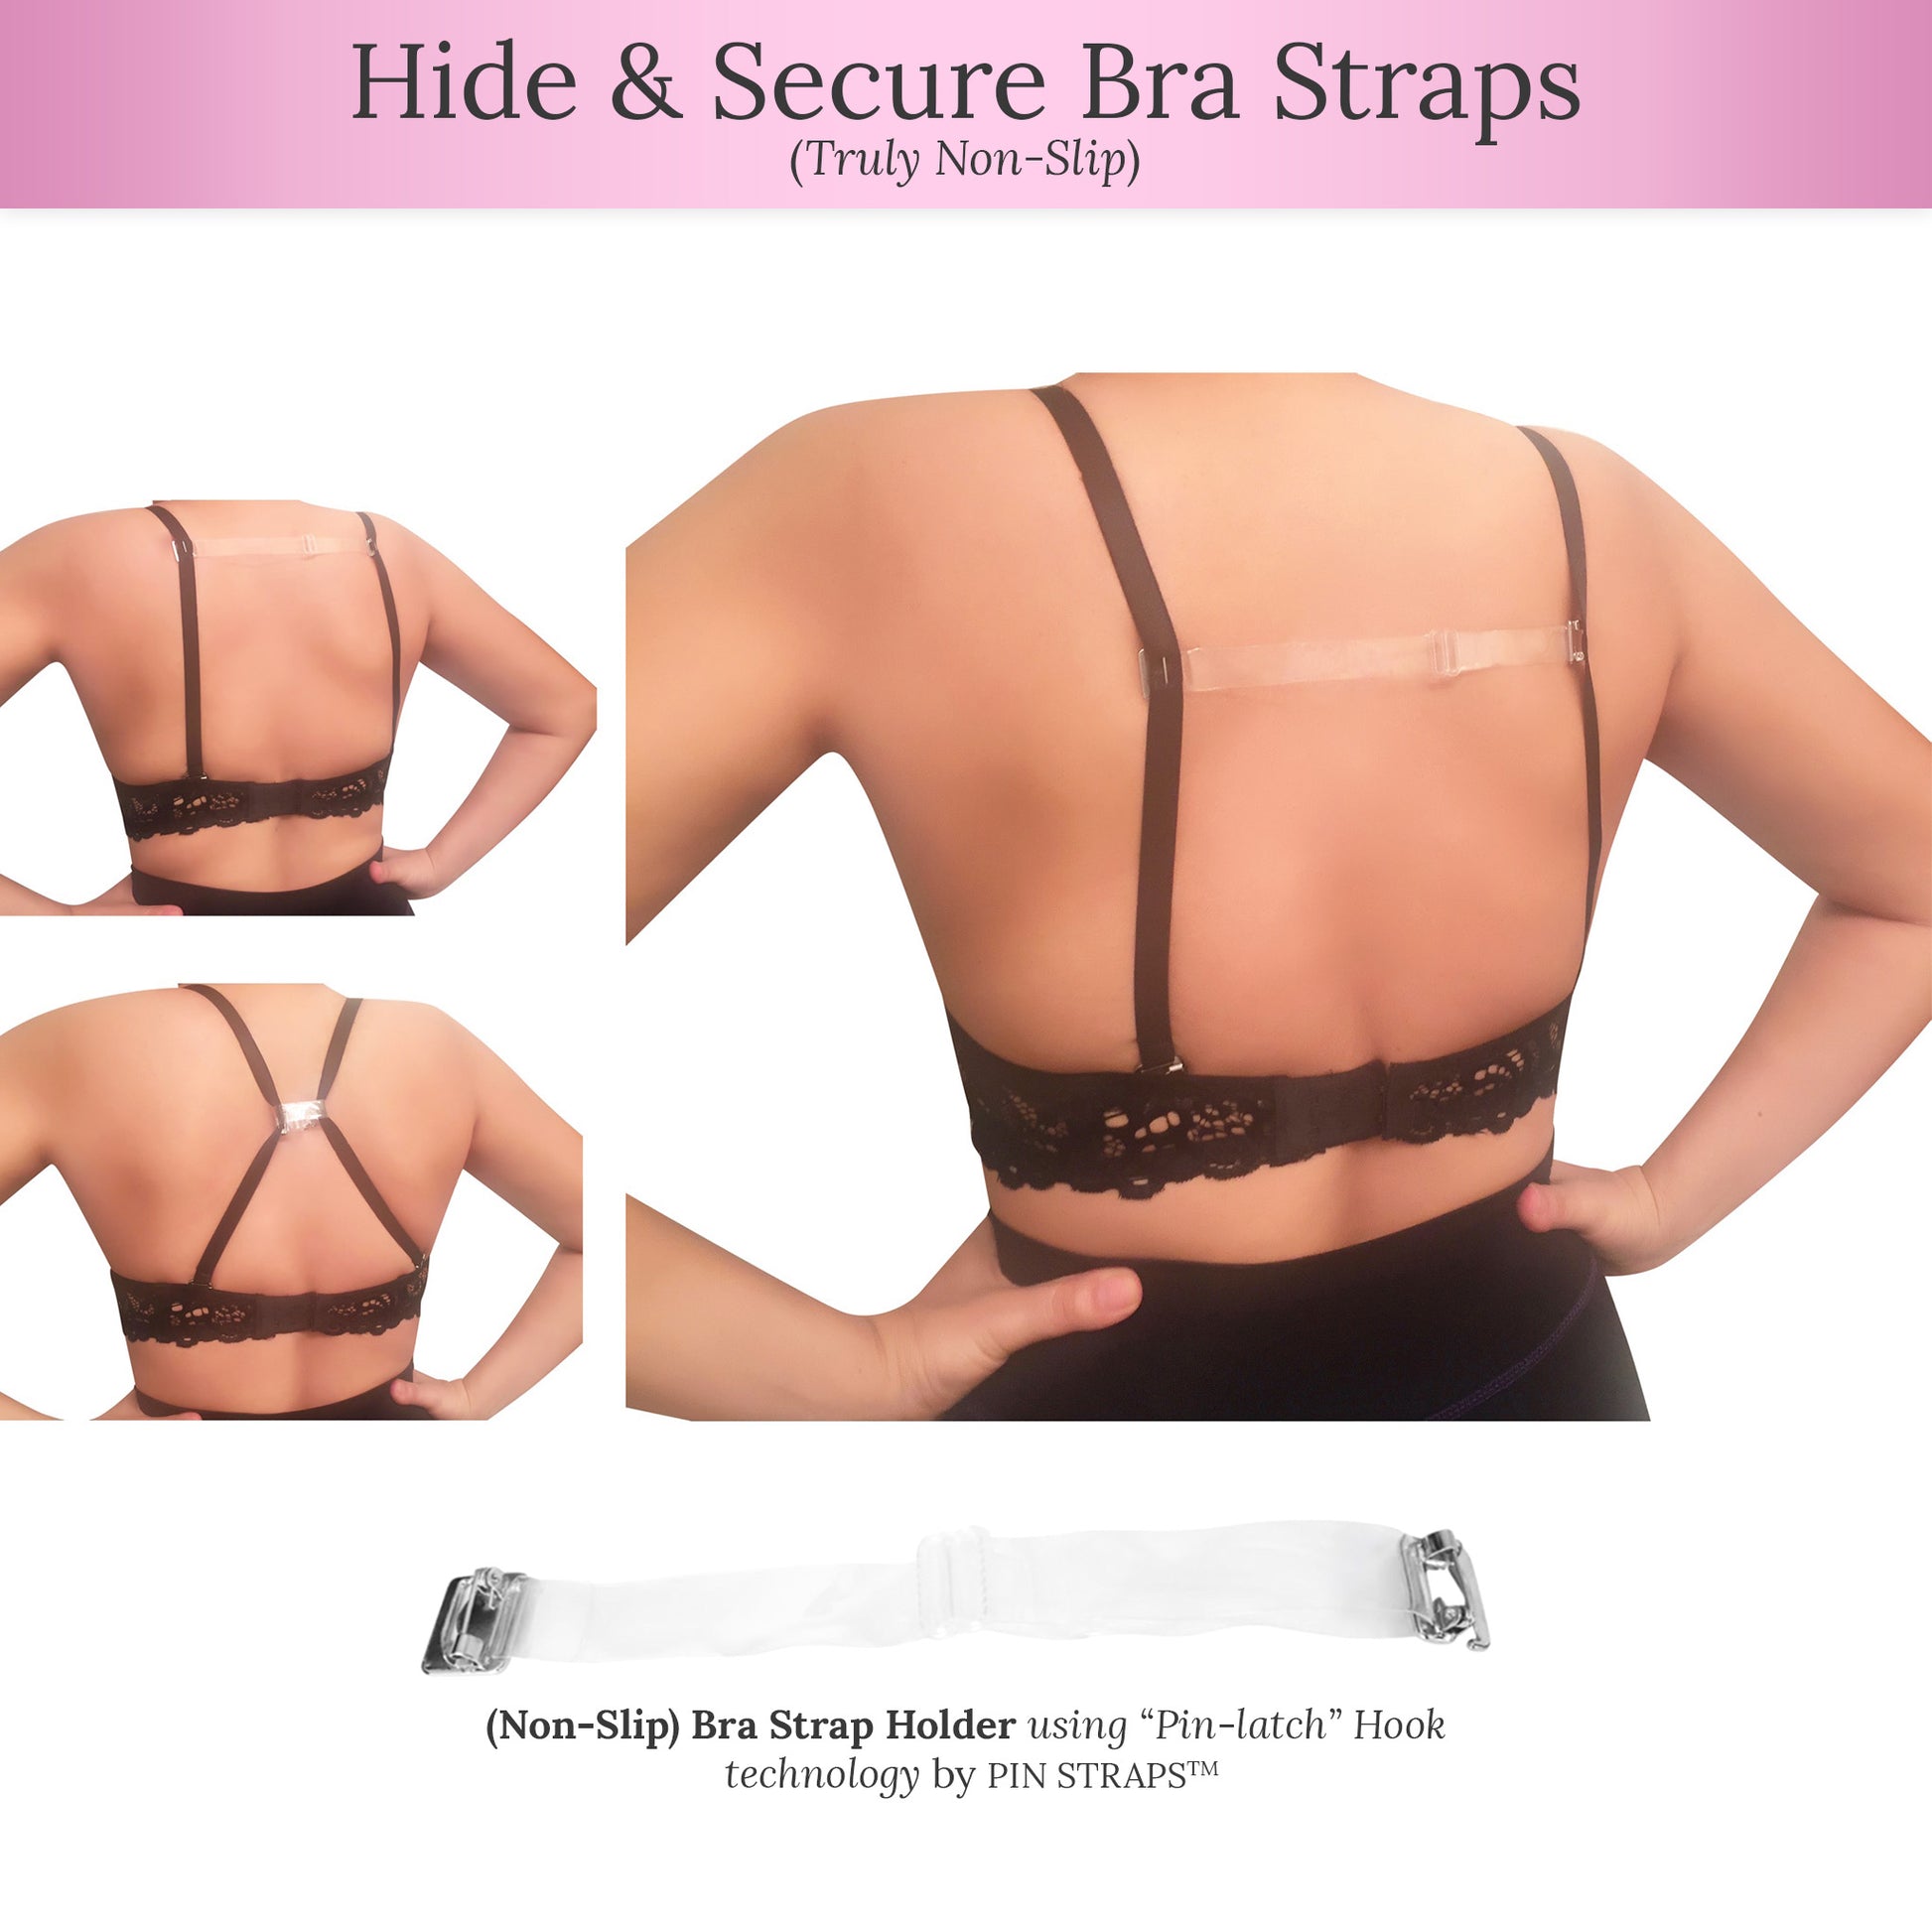 No Slip) Halter Straps for Bras, Swimsuits, Dresses 